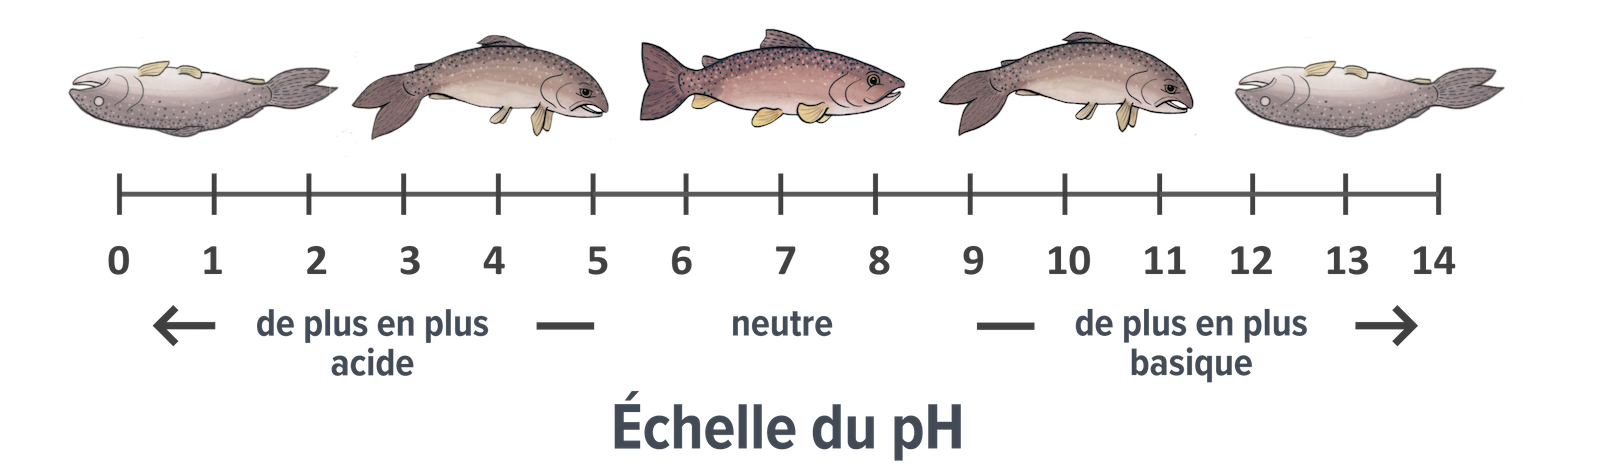 Échelle du pH montrant la santé des poissons à différents pH entre 0 (très acide) et 14 (très basique). Les poissons en mauvaise santé sont représentés aux extrémités de l'échelle, la santé des poissons s'améliorant à mesure qu'ils se rapprochent du centre de l'échelle, à des valeurs de pH proches de la neutralité.